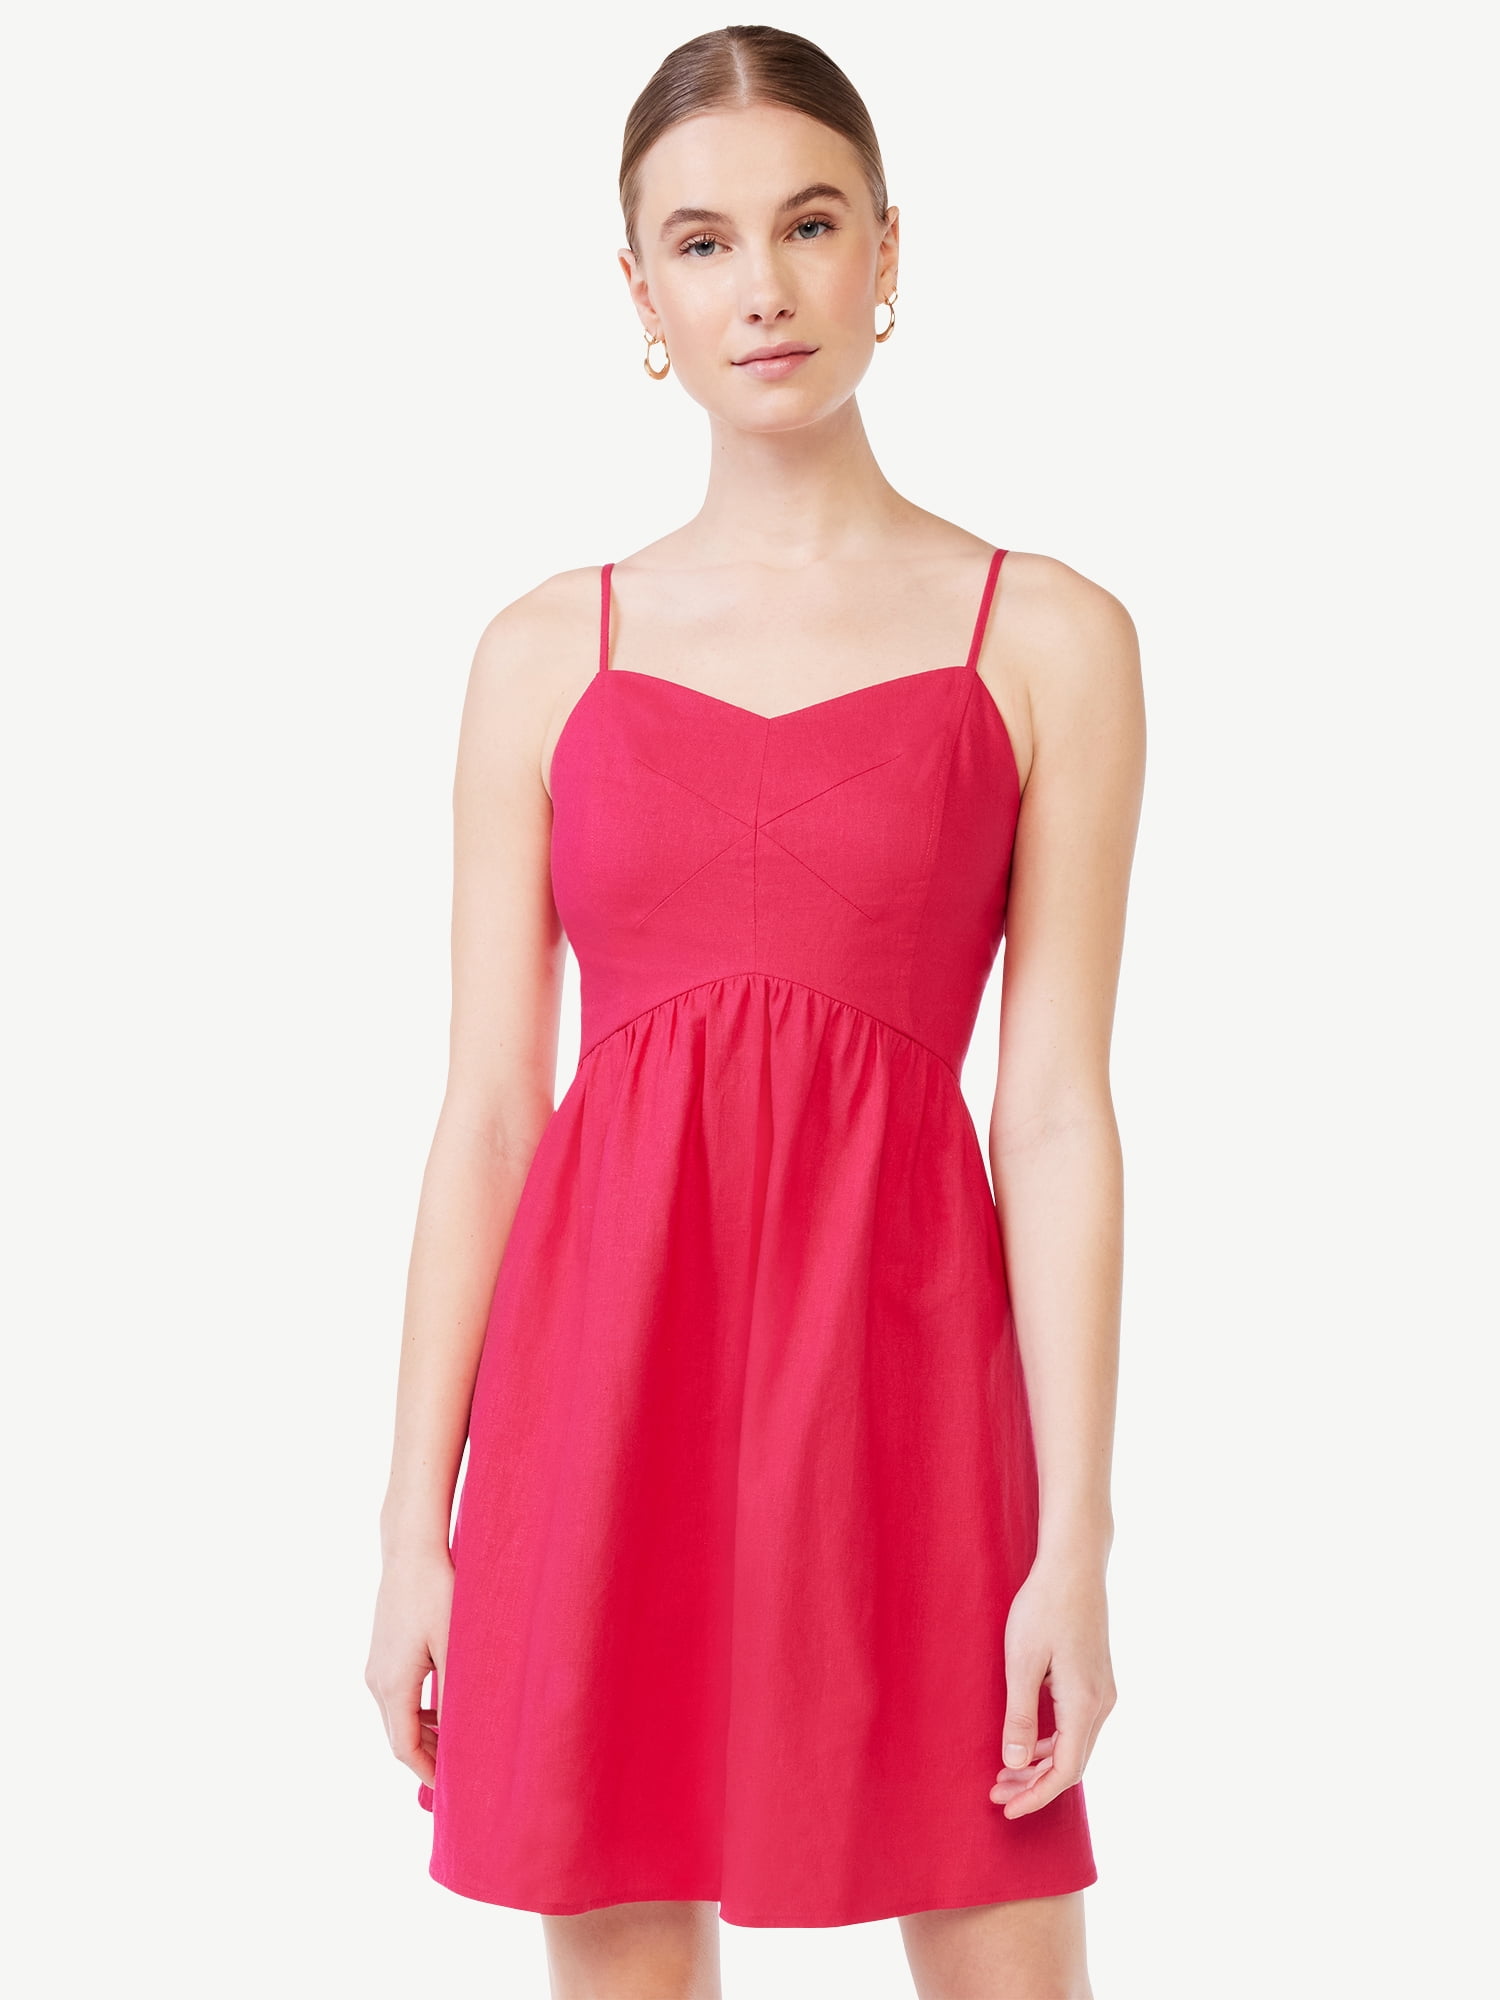 Scoop Women's Sweetheart Short Dress - Walmart.com